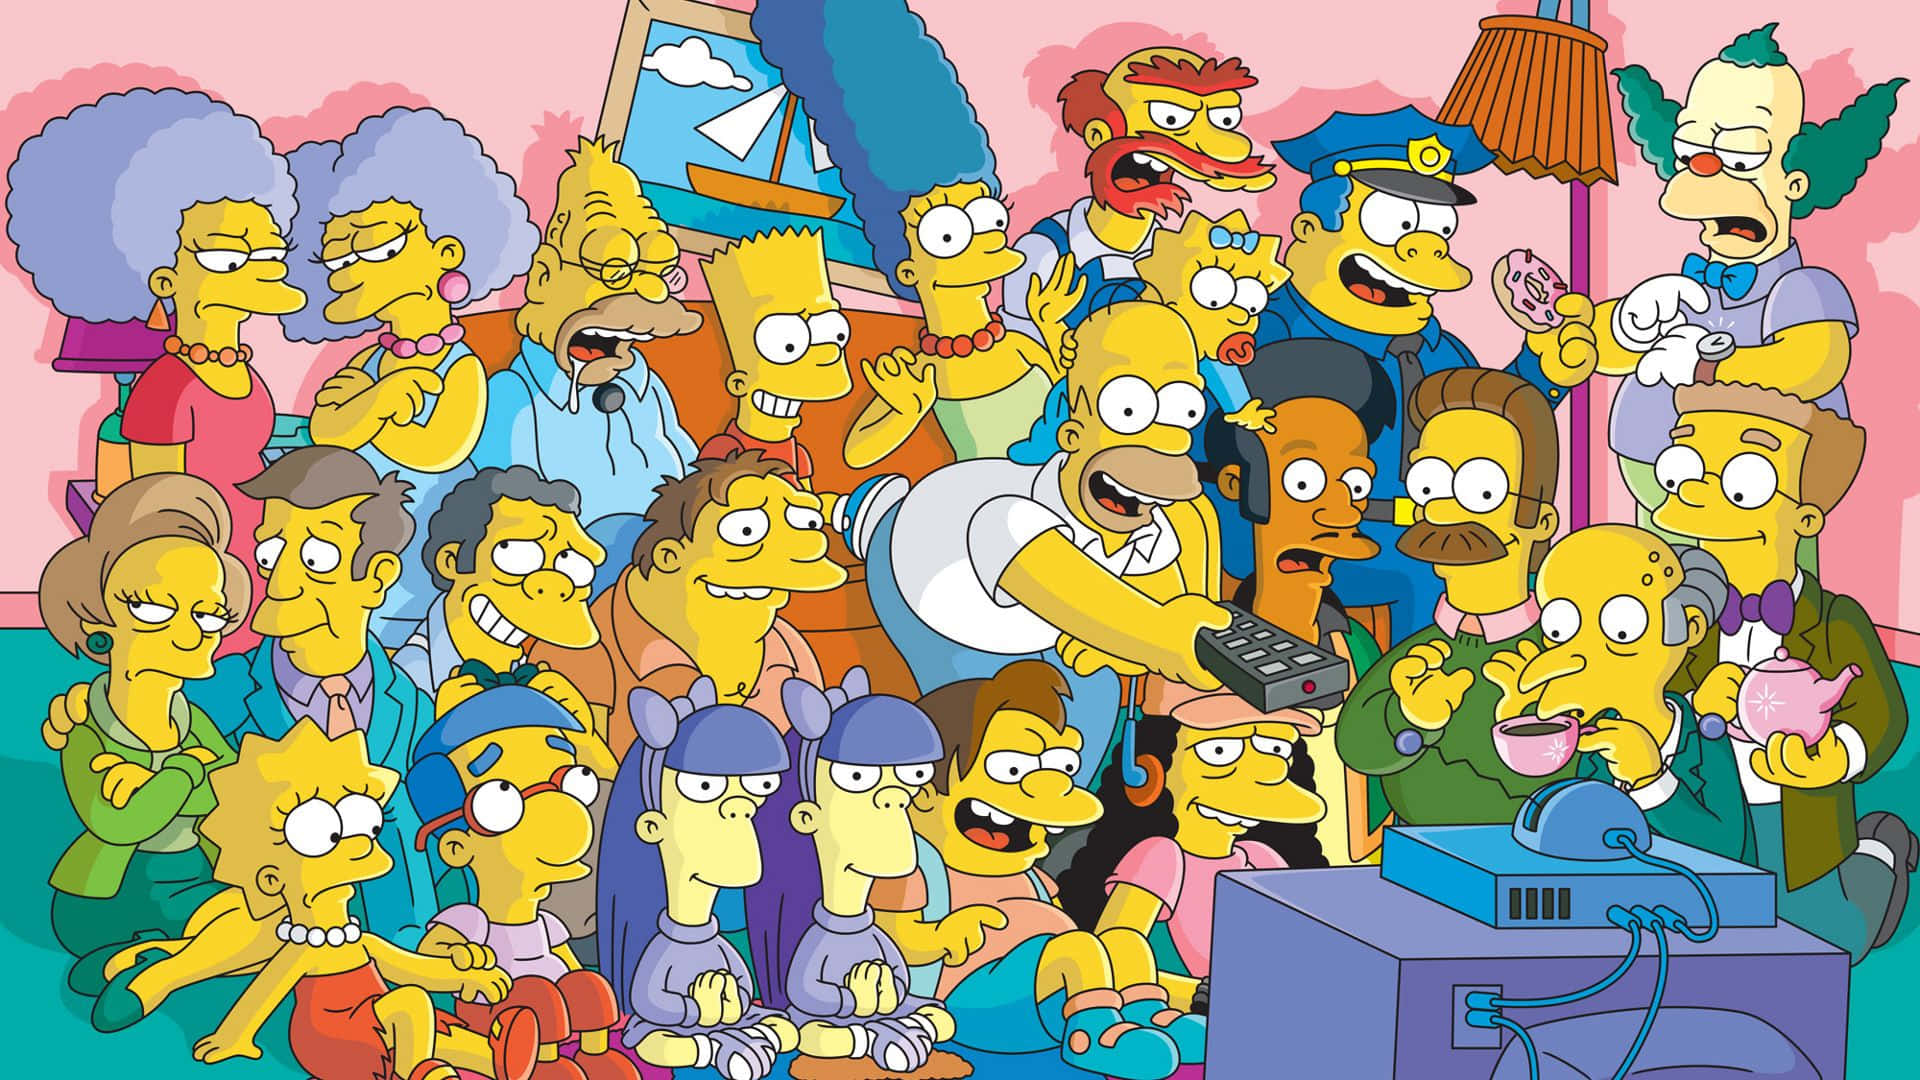 Homersimpson Och Bart Simpson Njuter Av Sin Favoritaktivitet På Datorn. Wallpaper